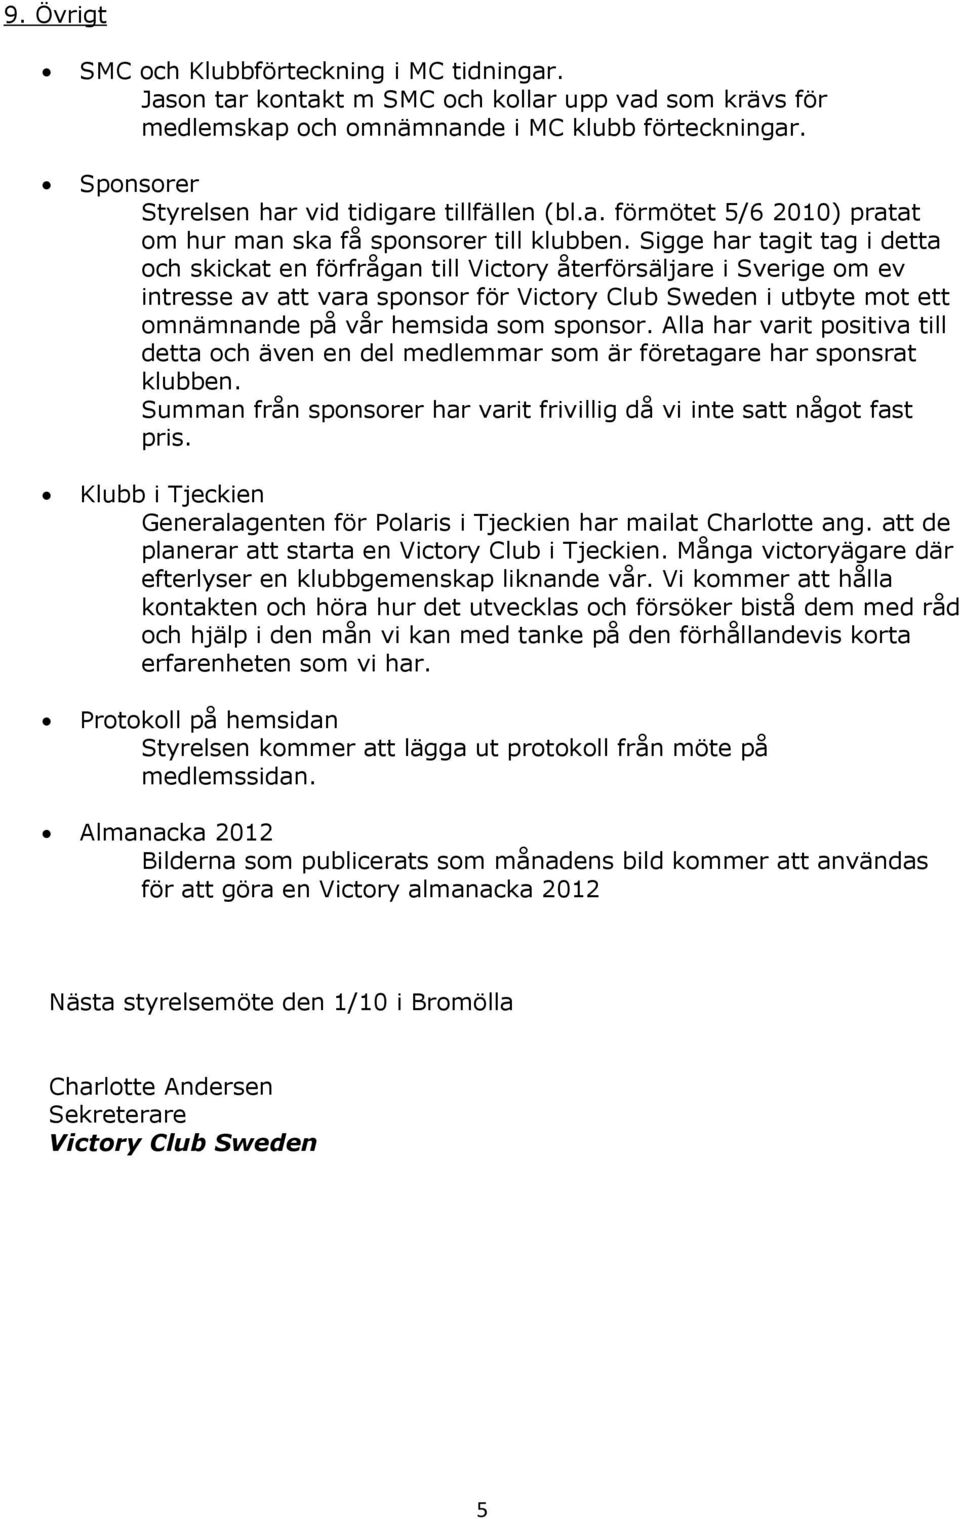 Sigge har tagit tag i detta och skickat en förfrågan till Victory återförsäljare i Sverige om ev intresse av att vara sponsor för Victory Club Sweden i utbyte mot ett omnämnande på vår hemsida som